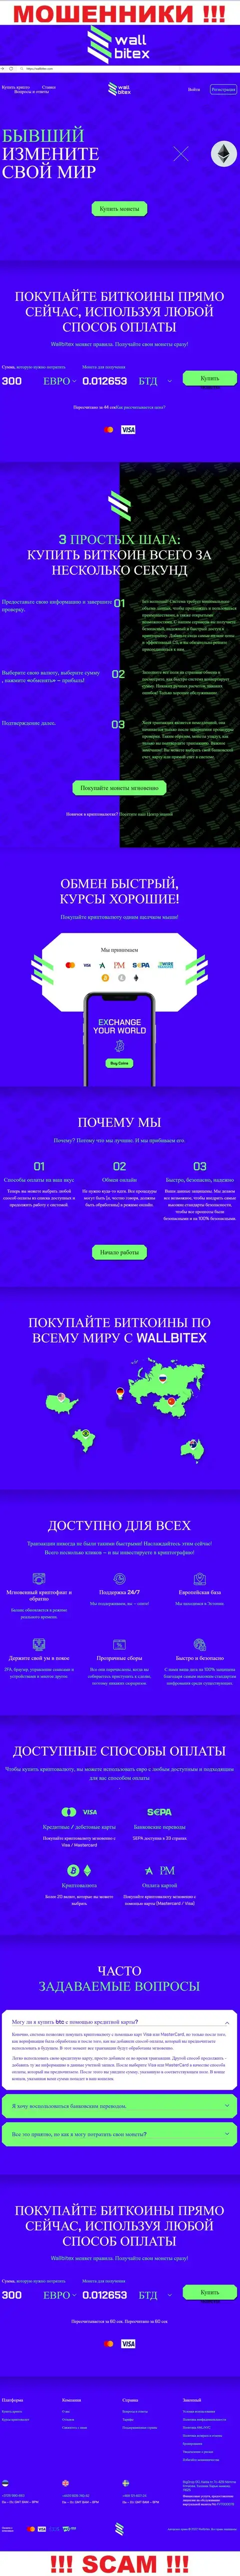 WallBitex Com - это официальный сервис мошеннической конторы ВаллБитекс